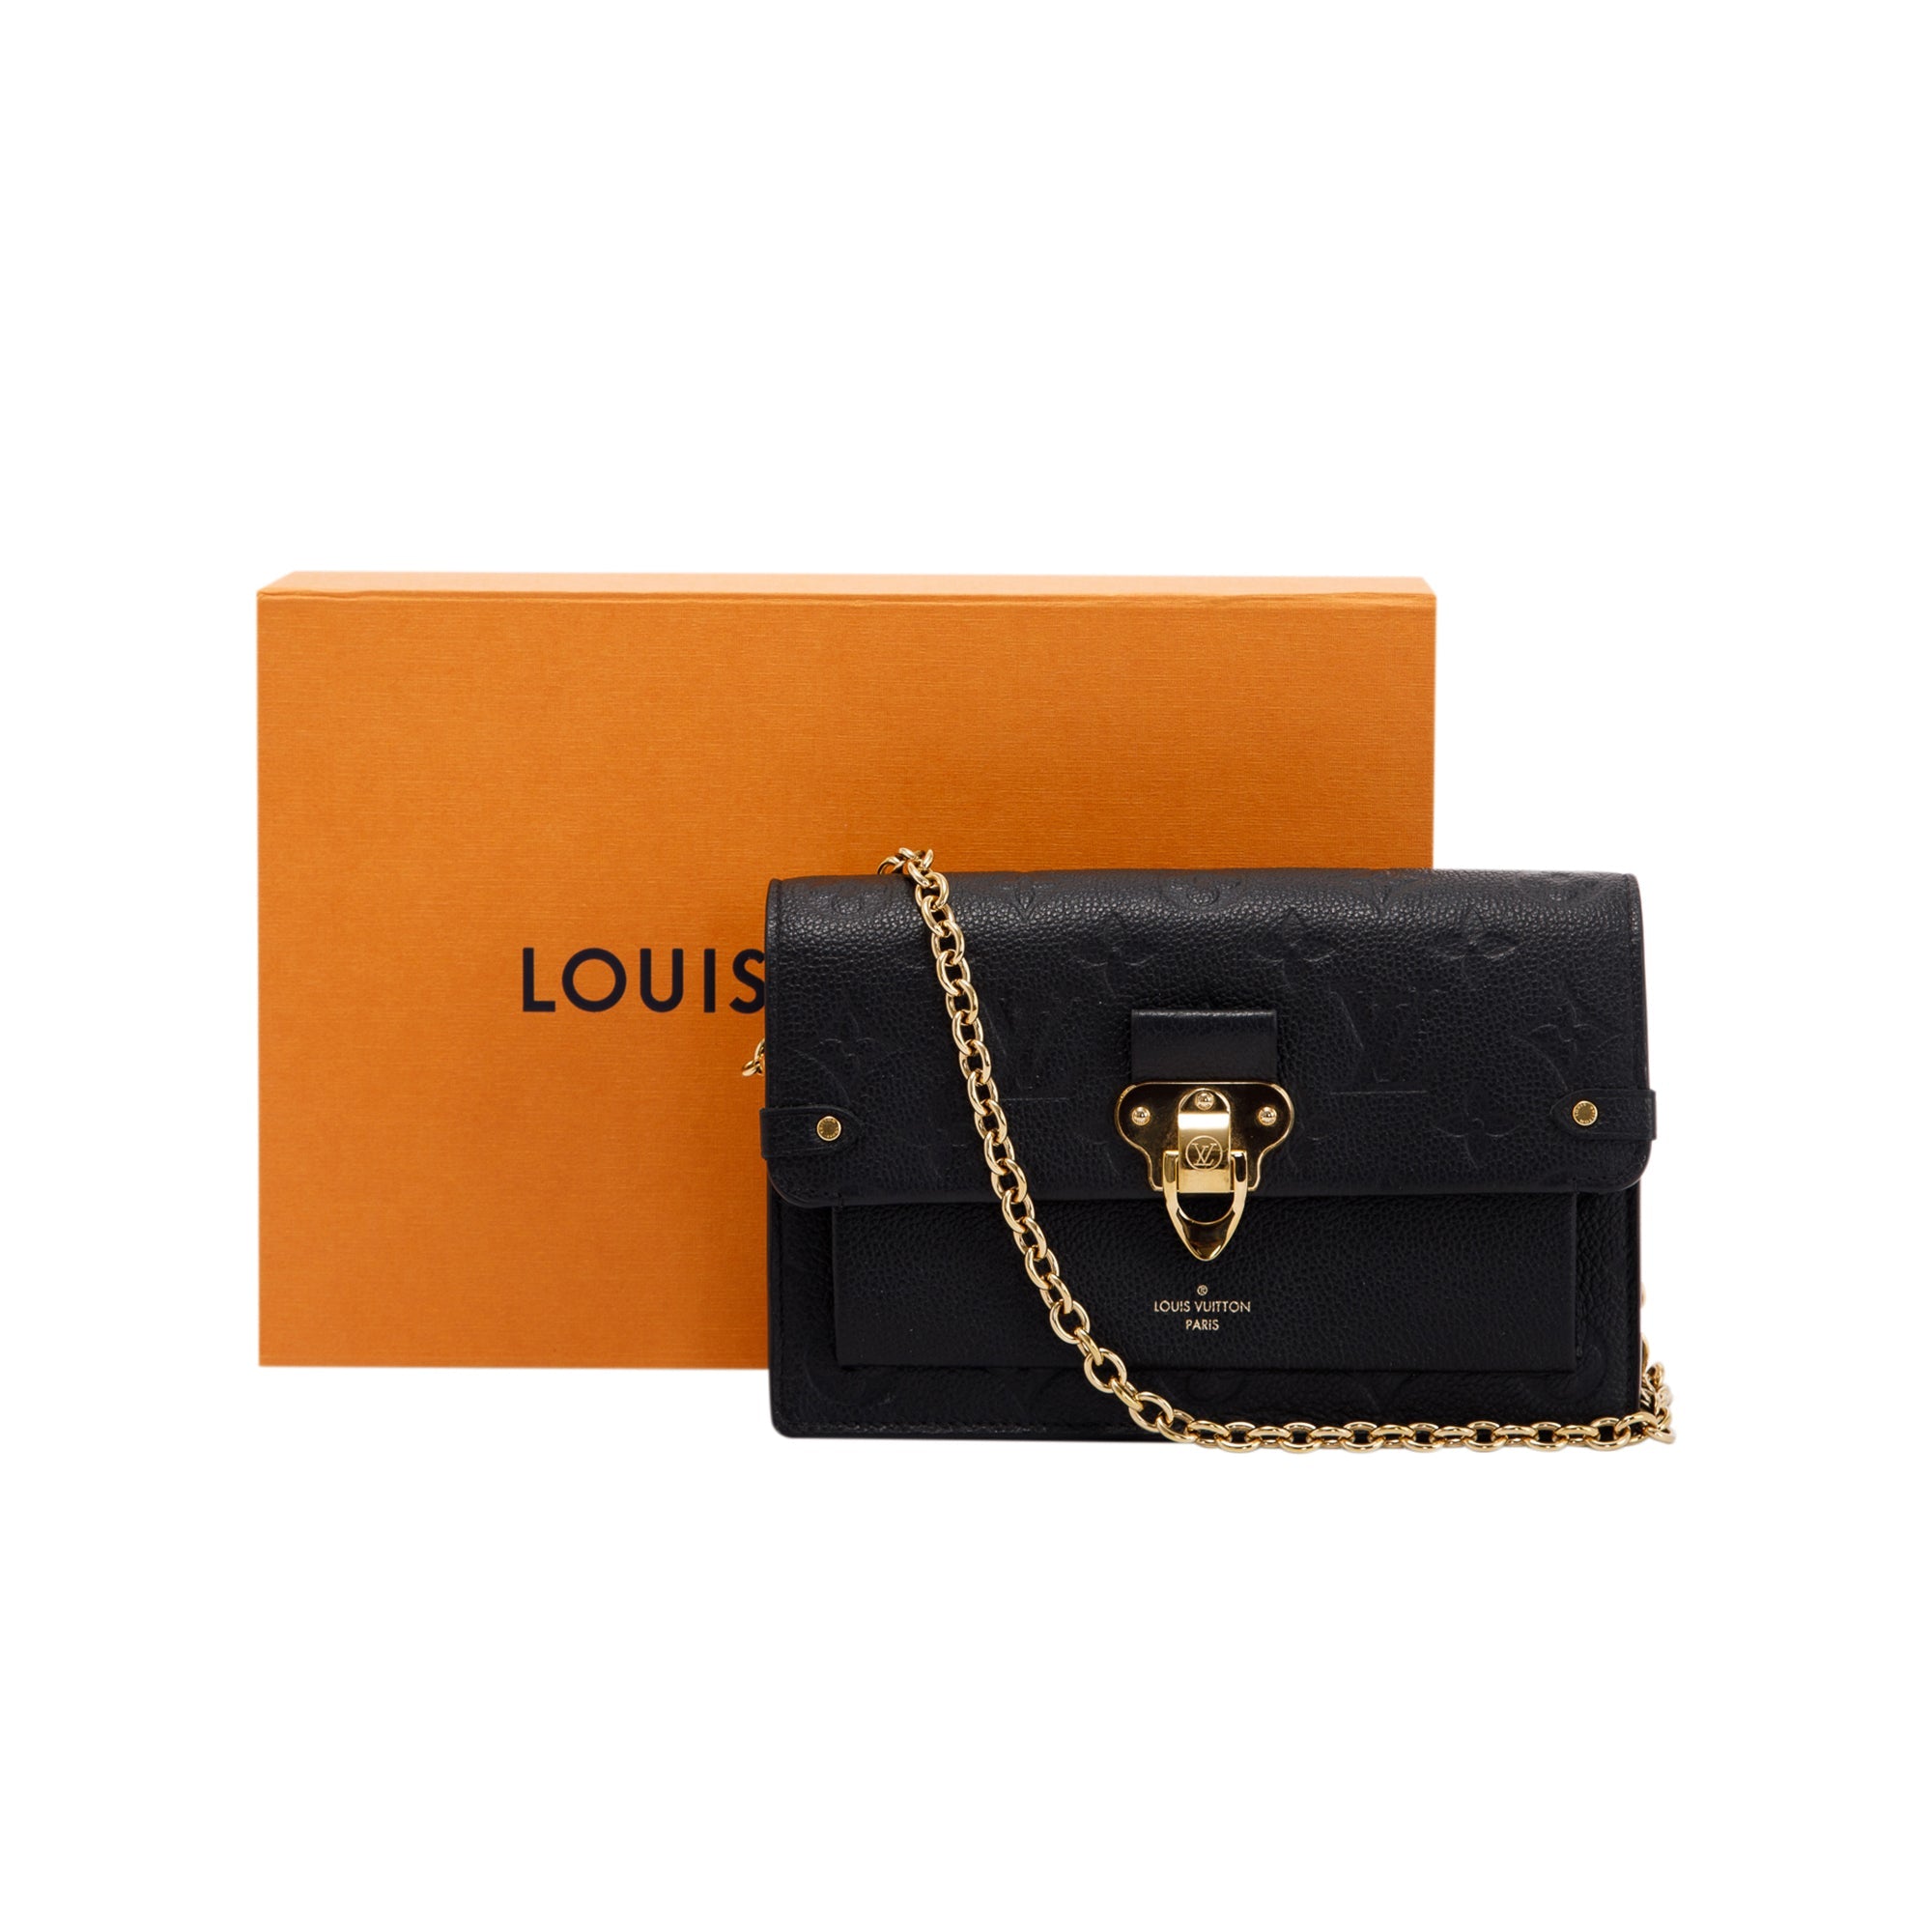 Louis Vuitton Monogram Empreinte Vavin Chain Wallet w/ Box